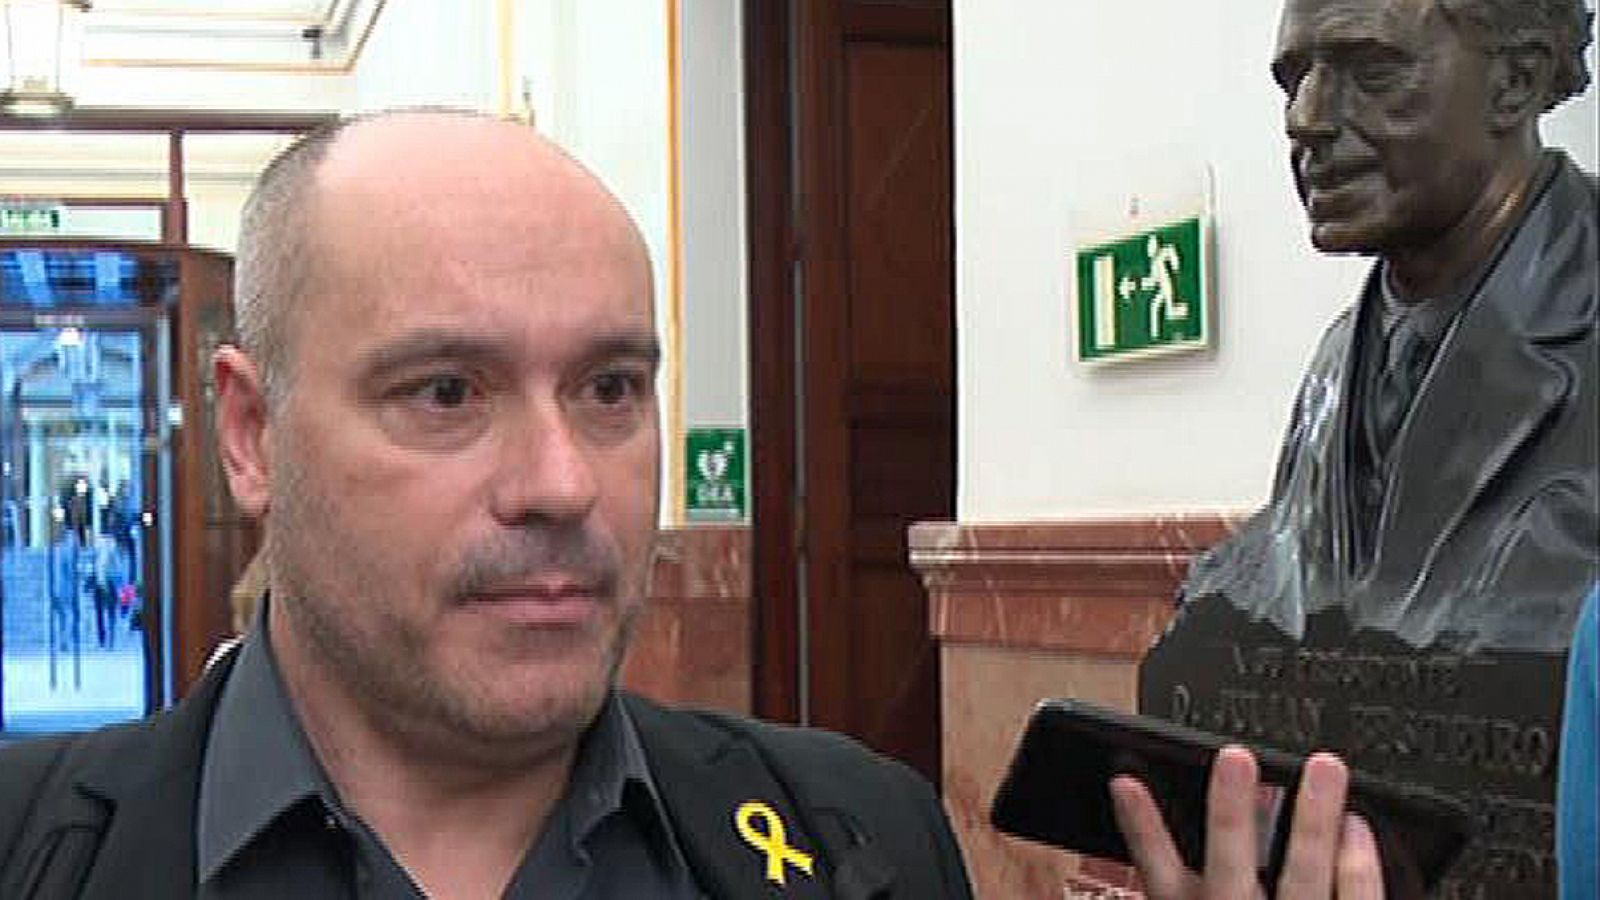 Jordi Salvador (ERC), diputado al que Borrell acusó de escupirle: "Nunca he escupido a nadie, no va conmigo"